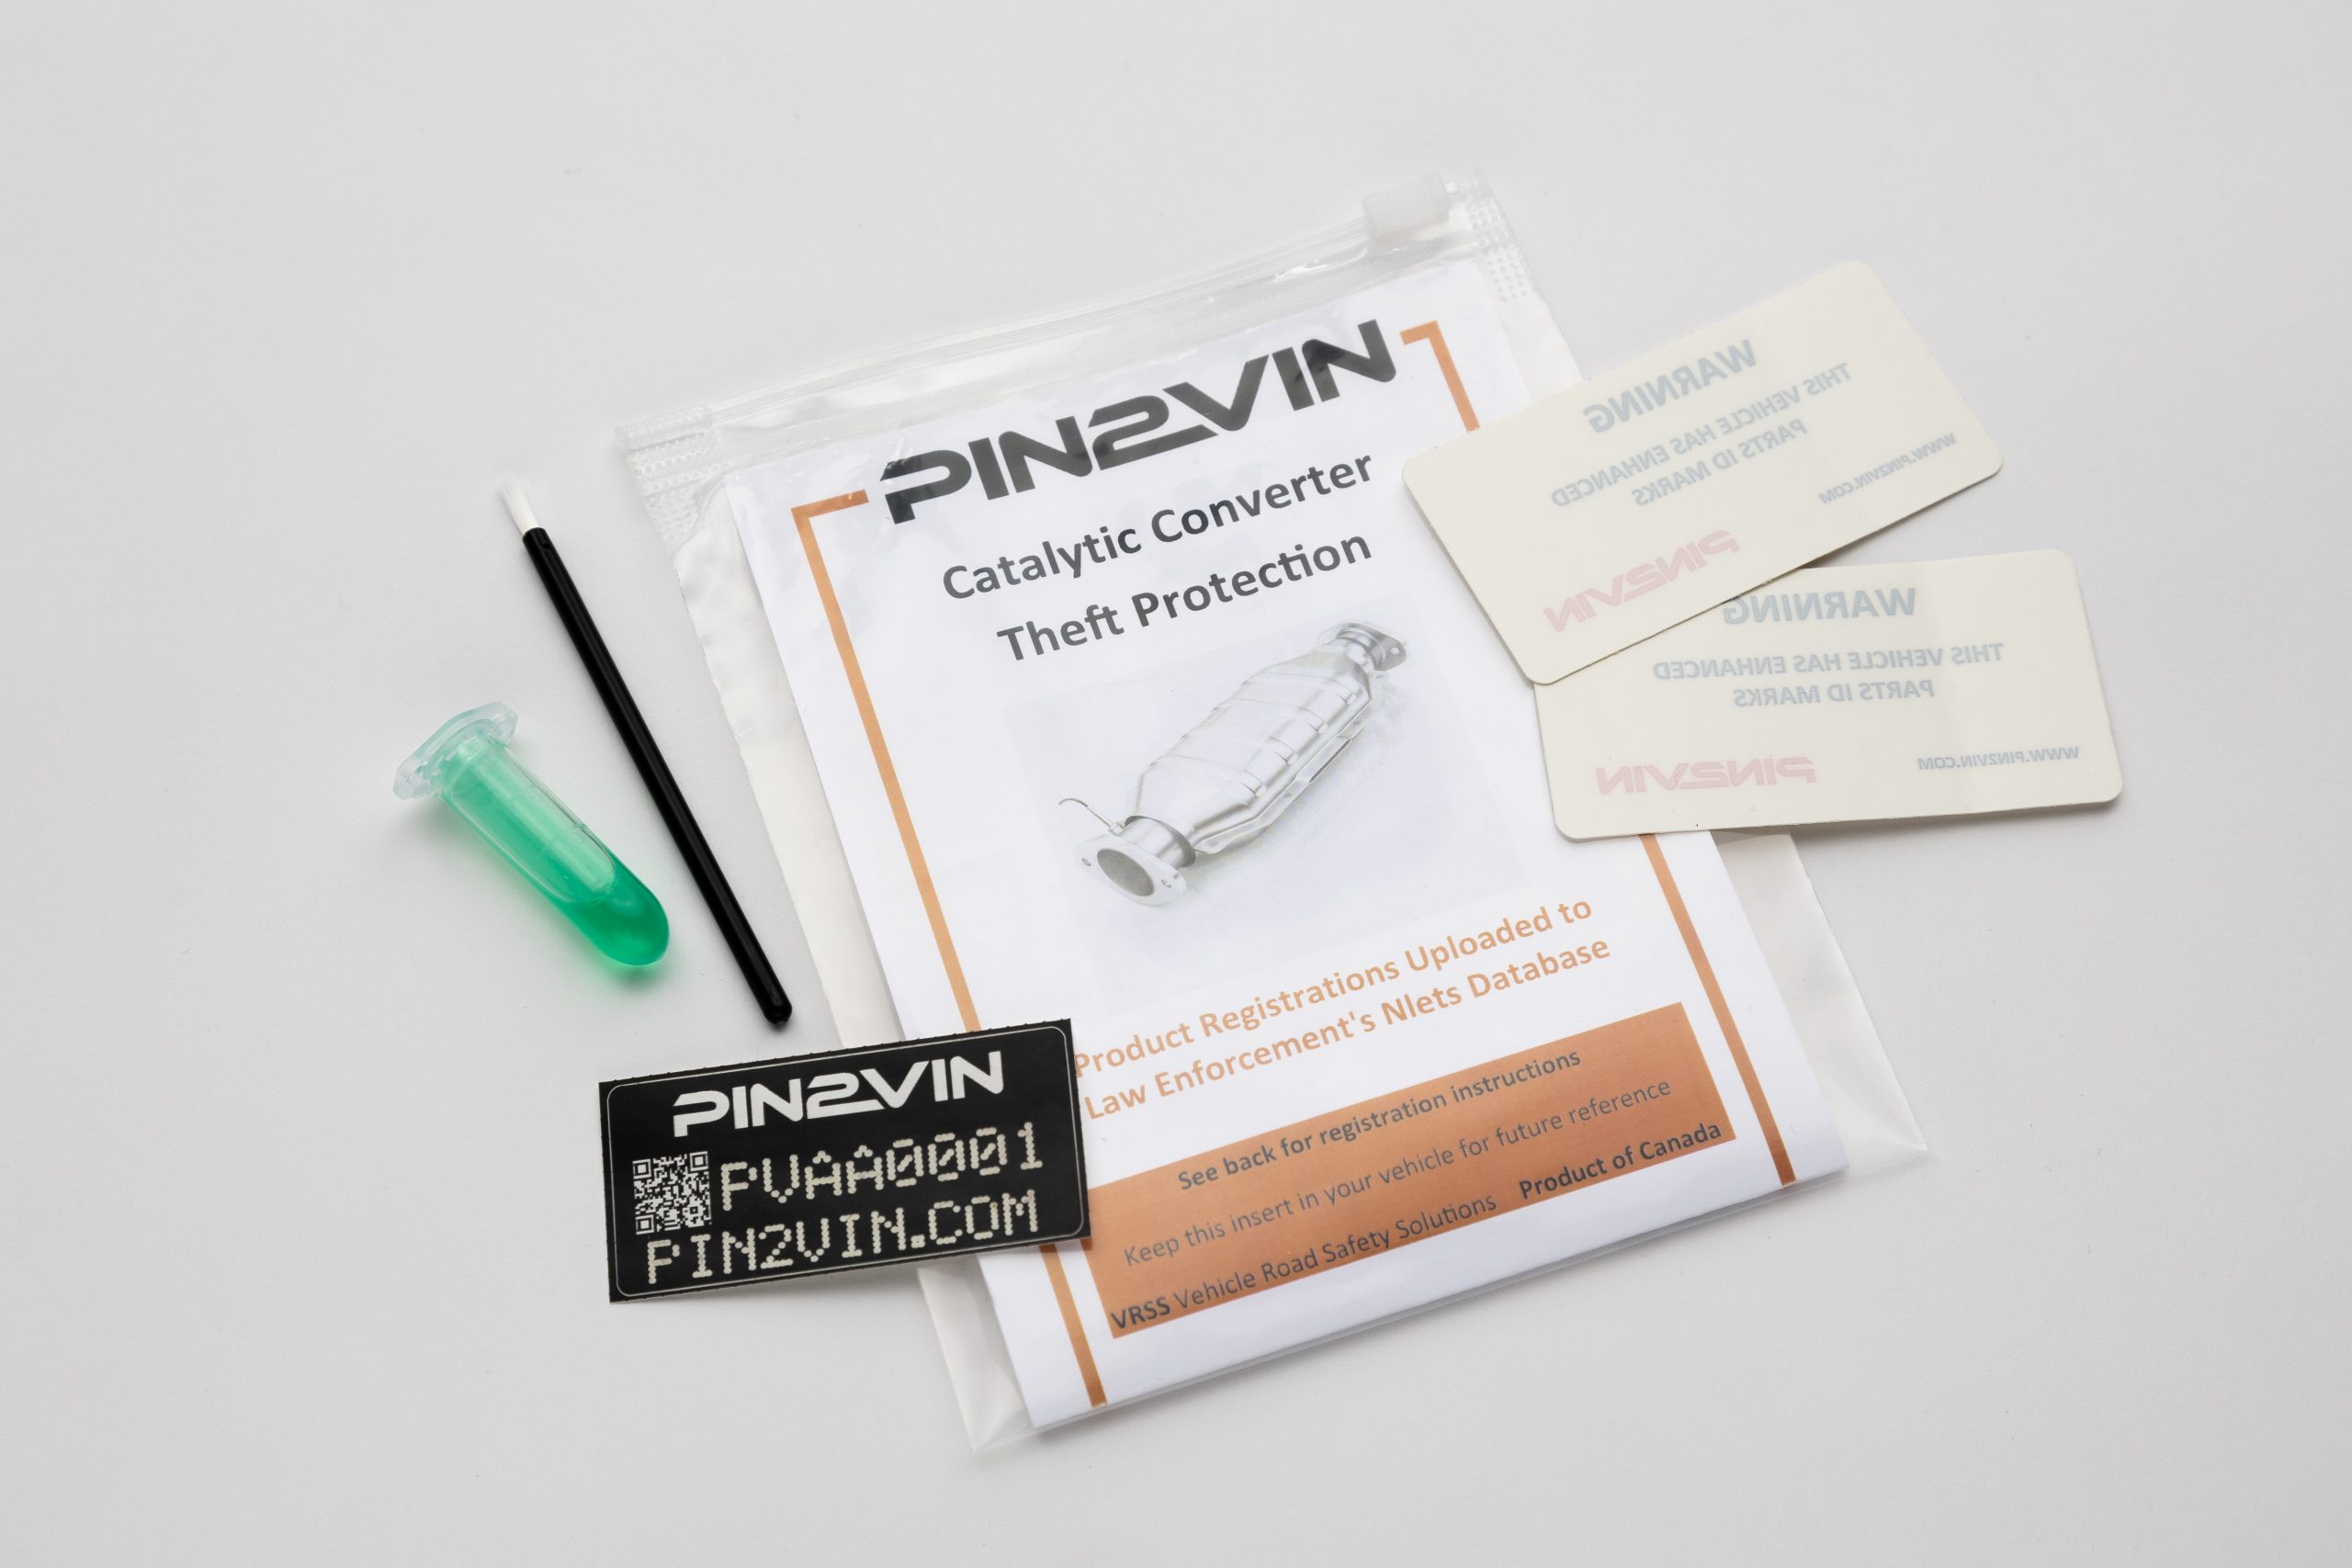 Image of ENGLISH PIN2VIN retail kit